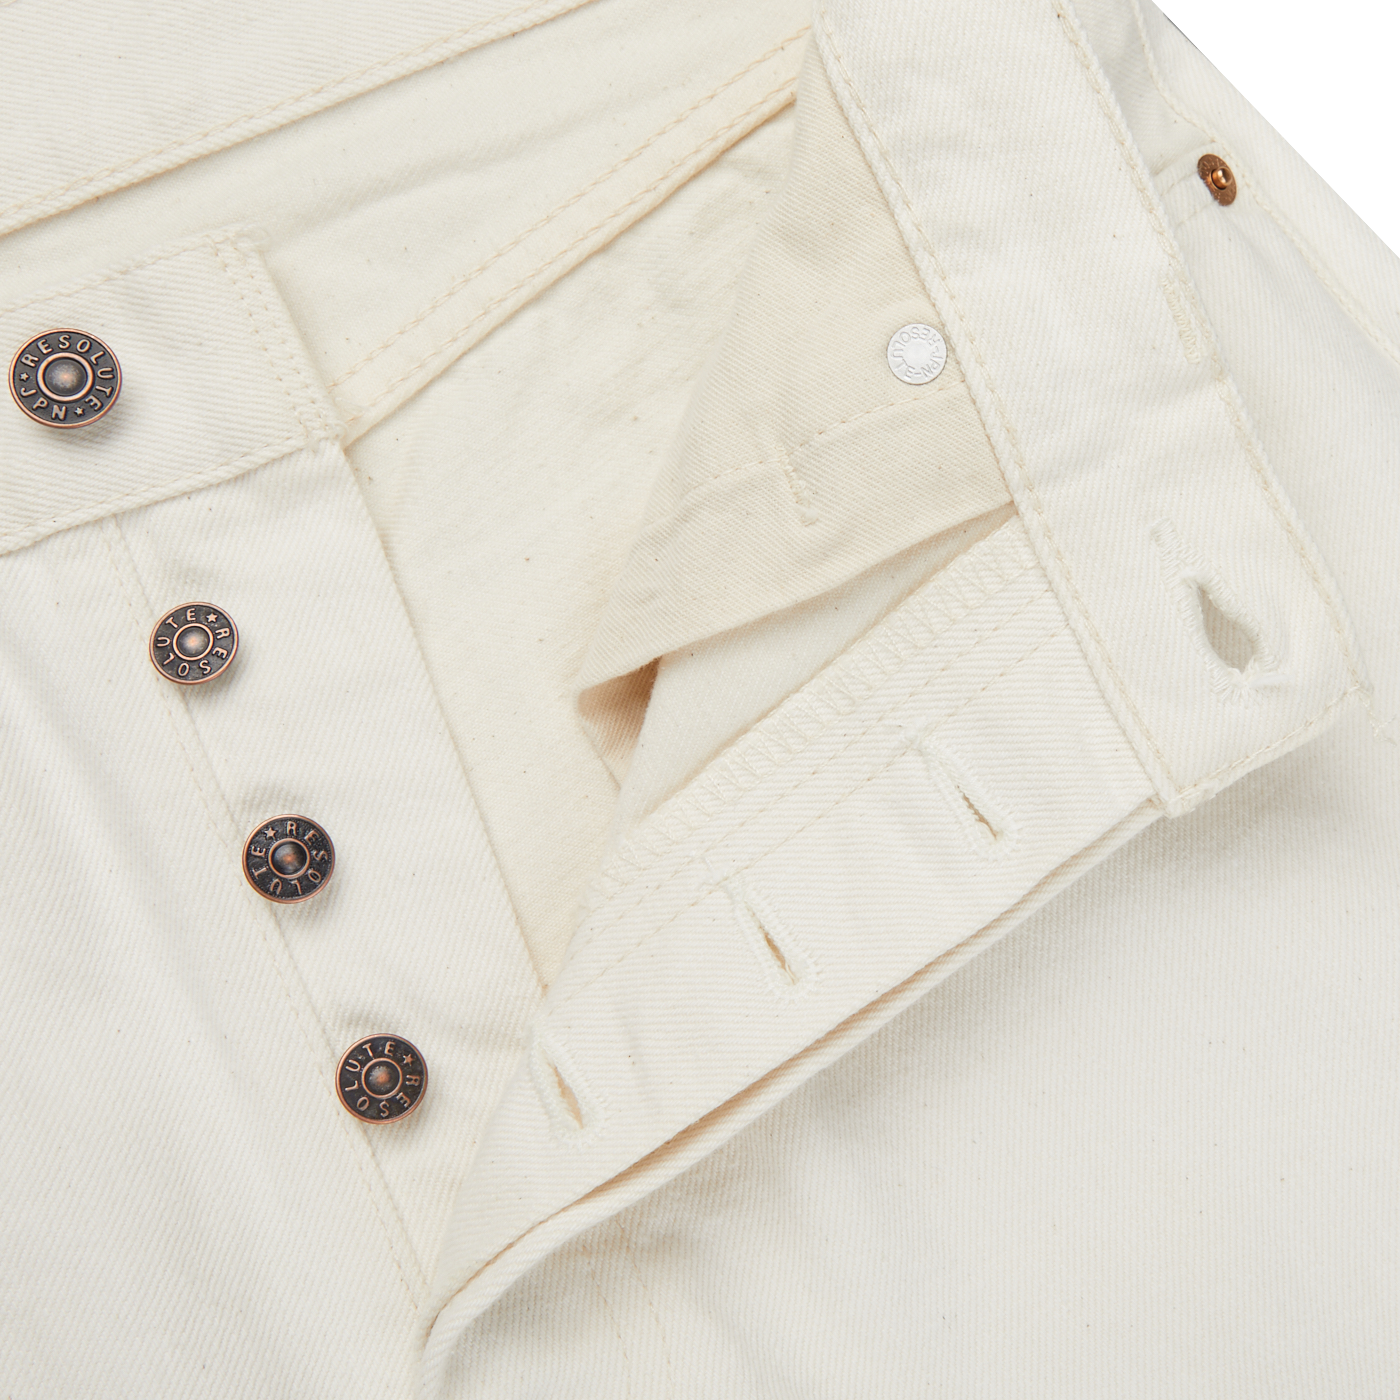 Resolute Cream Cotton Selvedge 710 One Wash Jeans Zipper